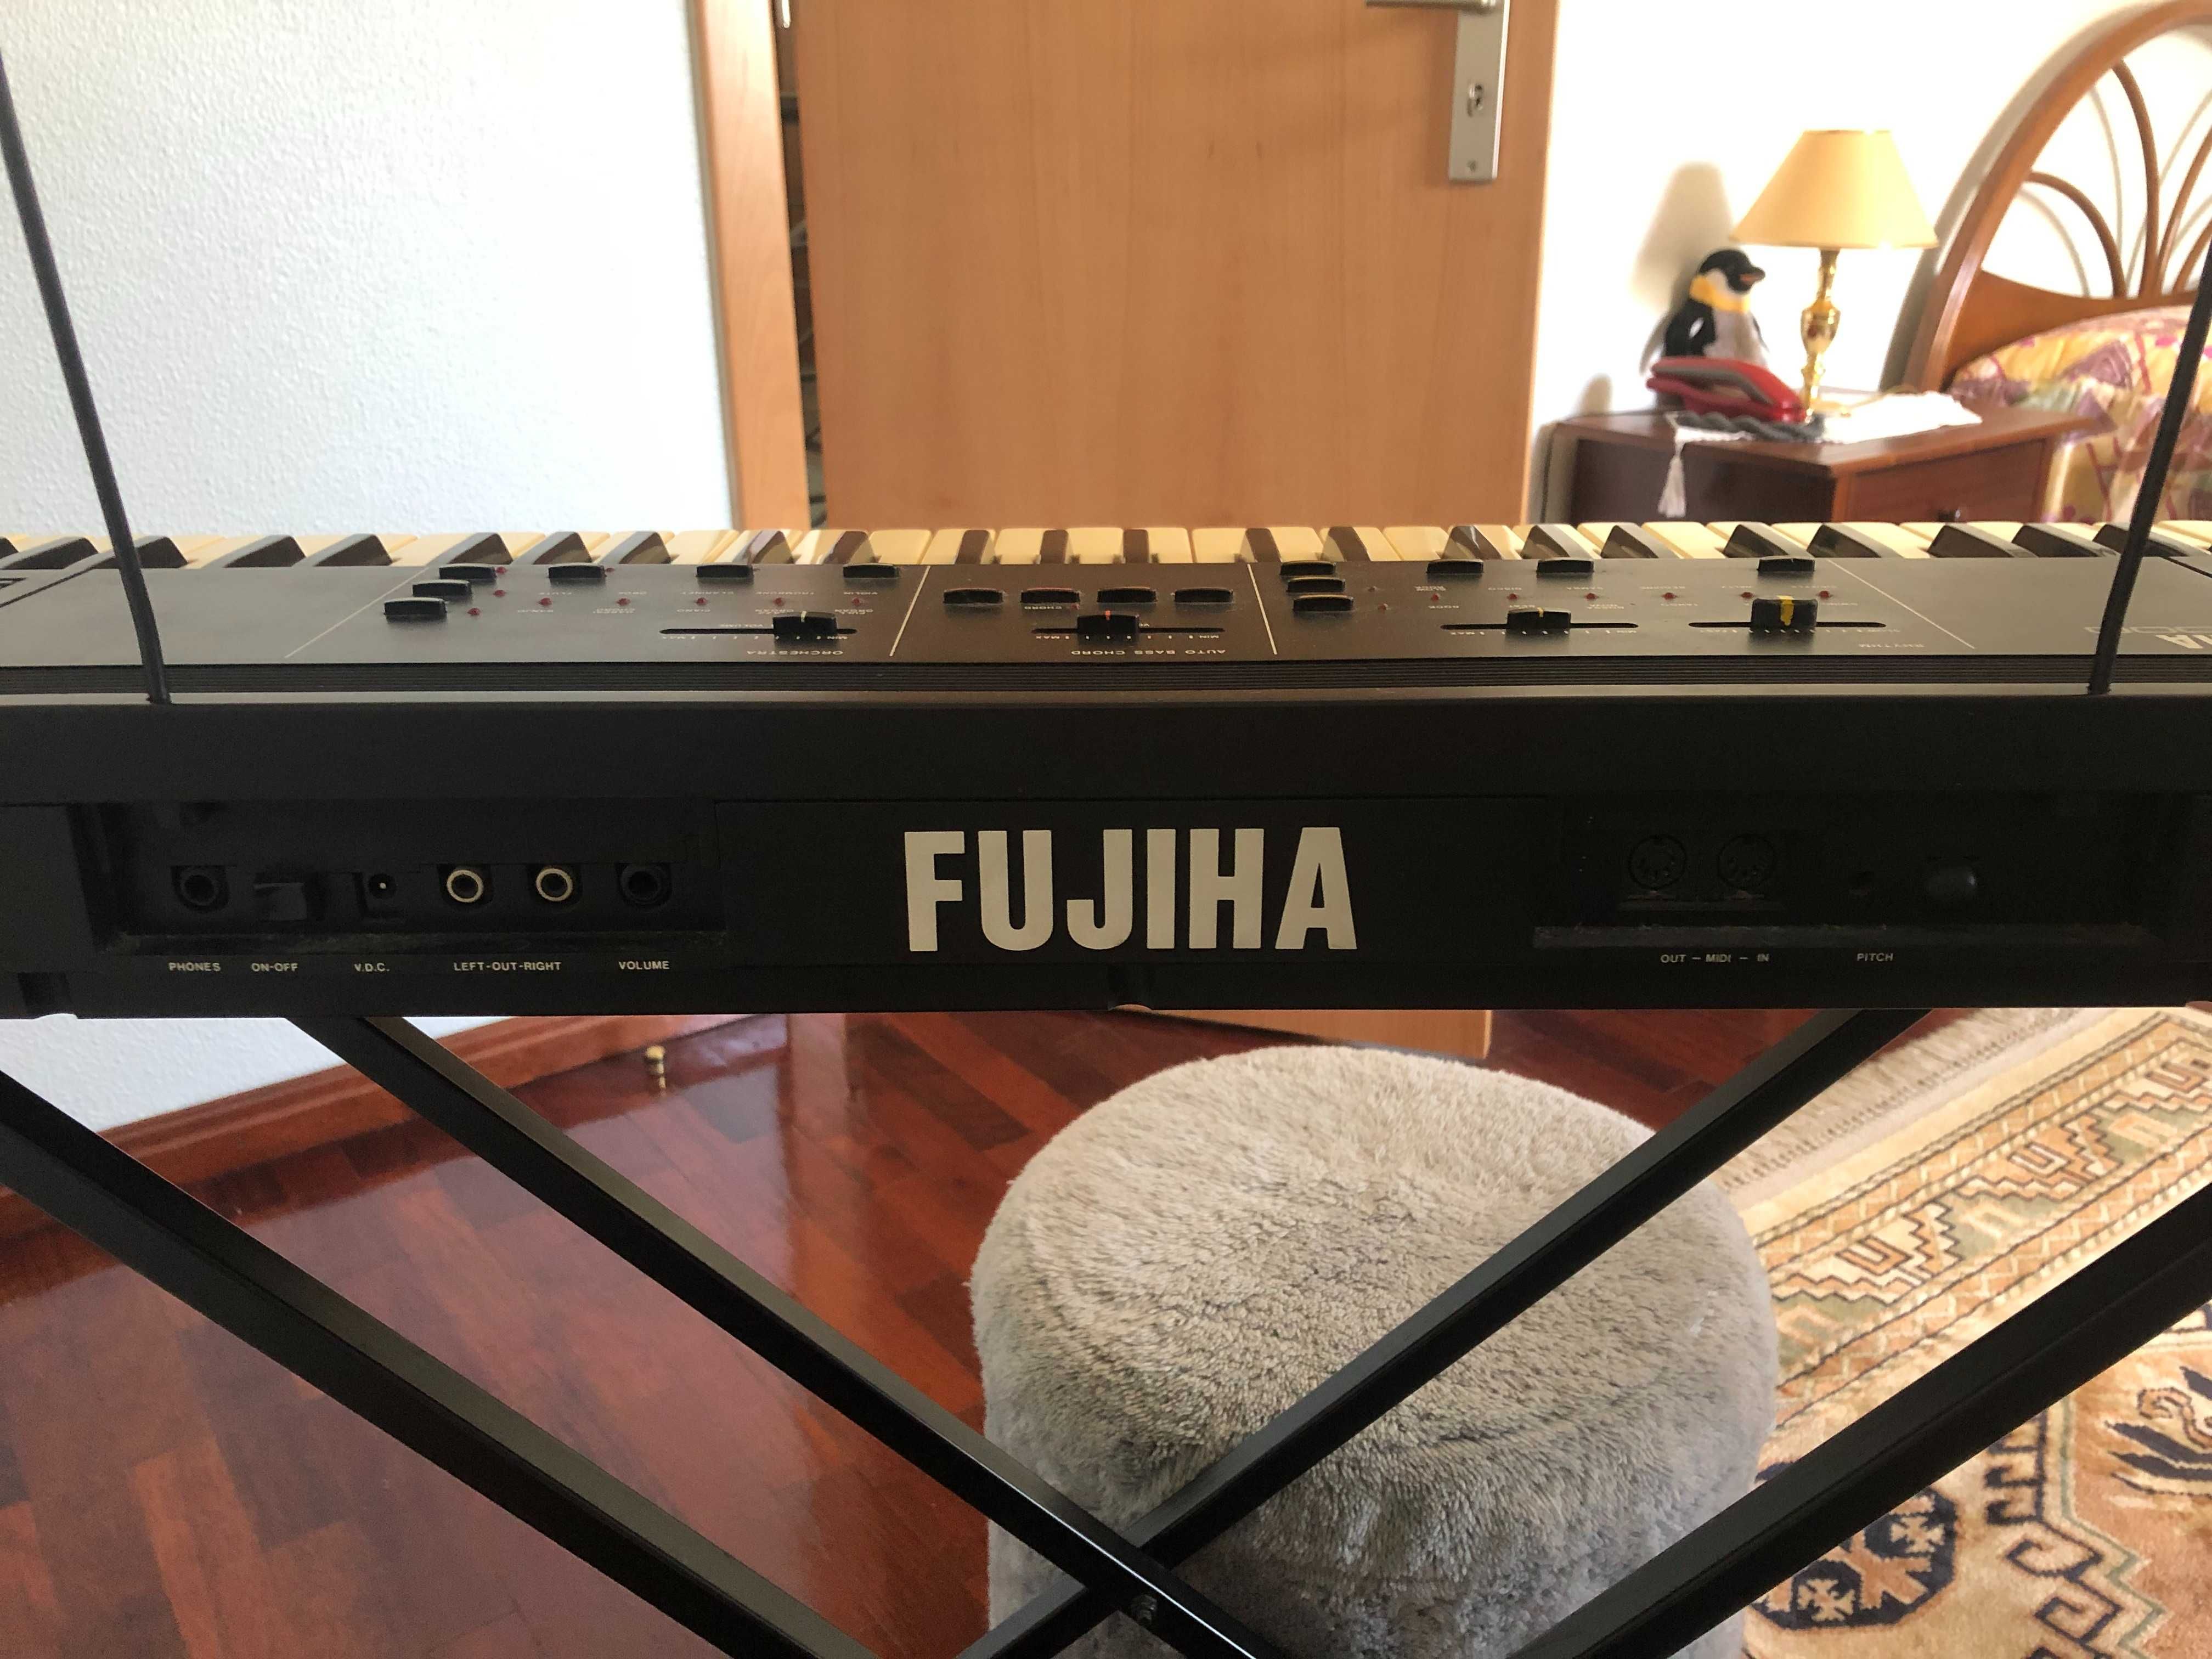 Órgão sintetizador Fujiha F-2000